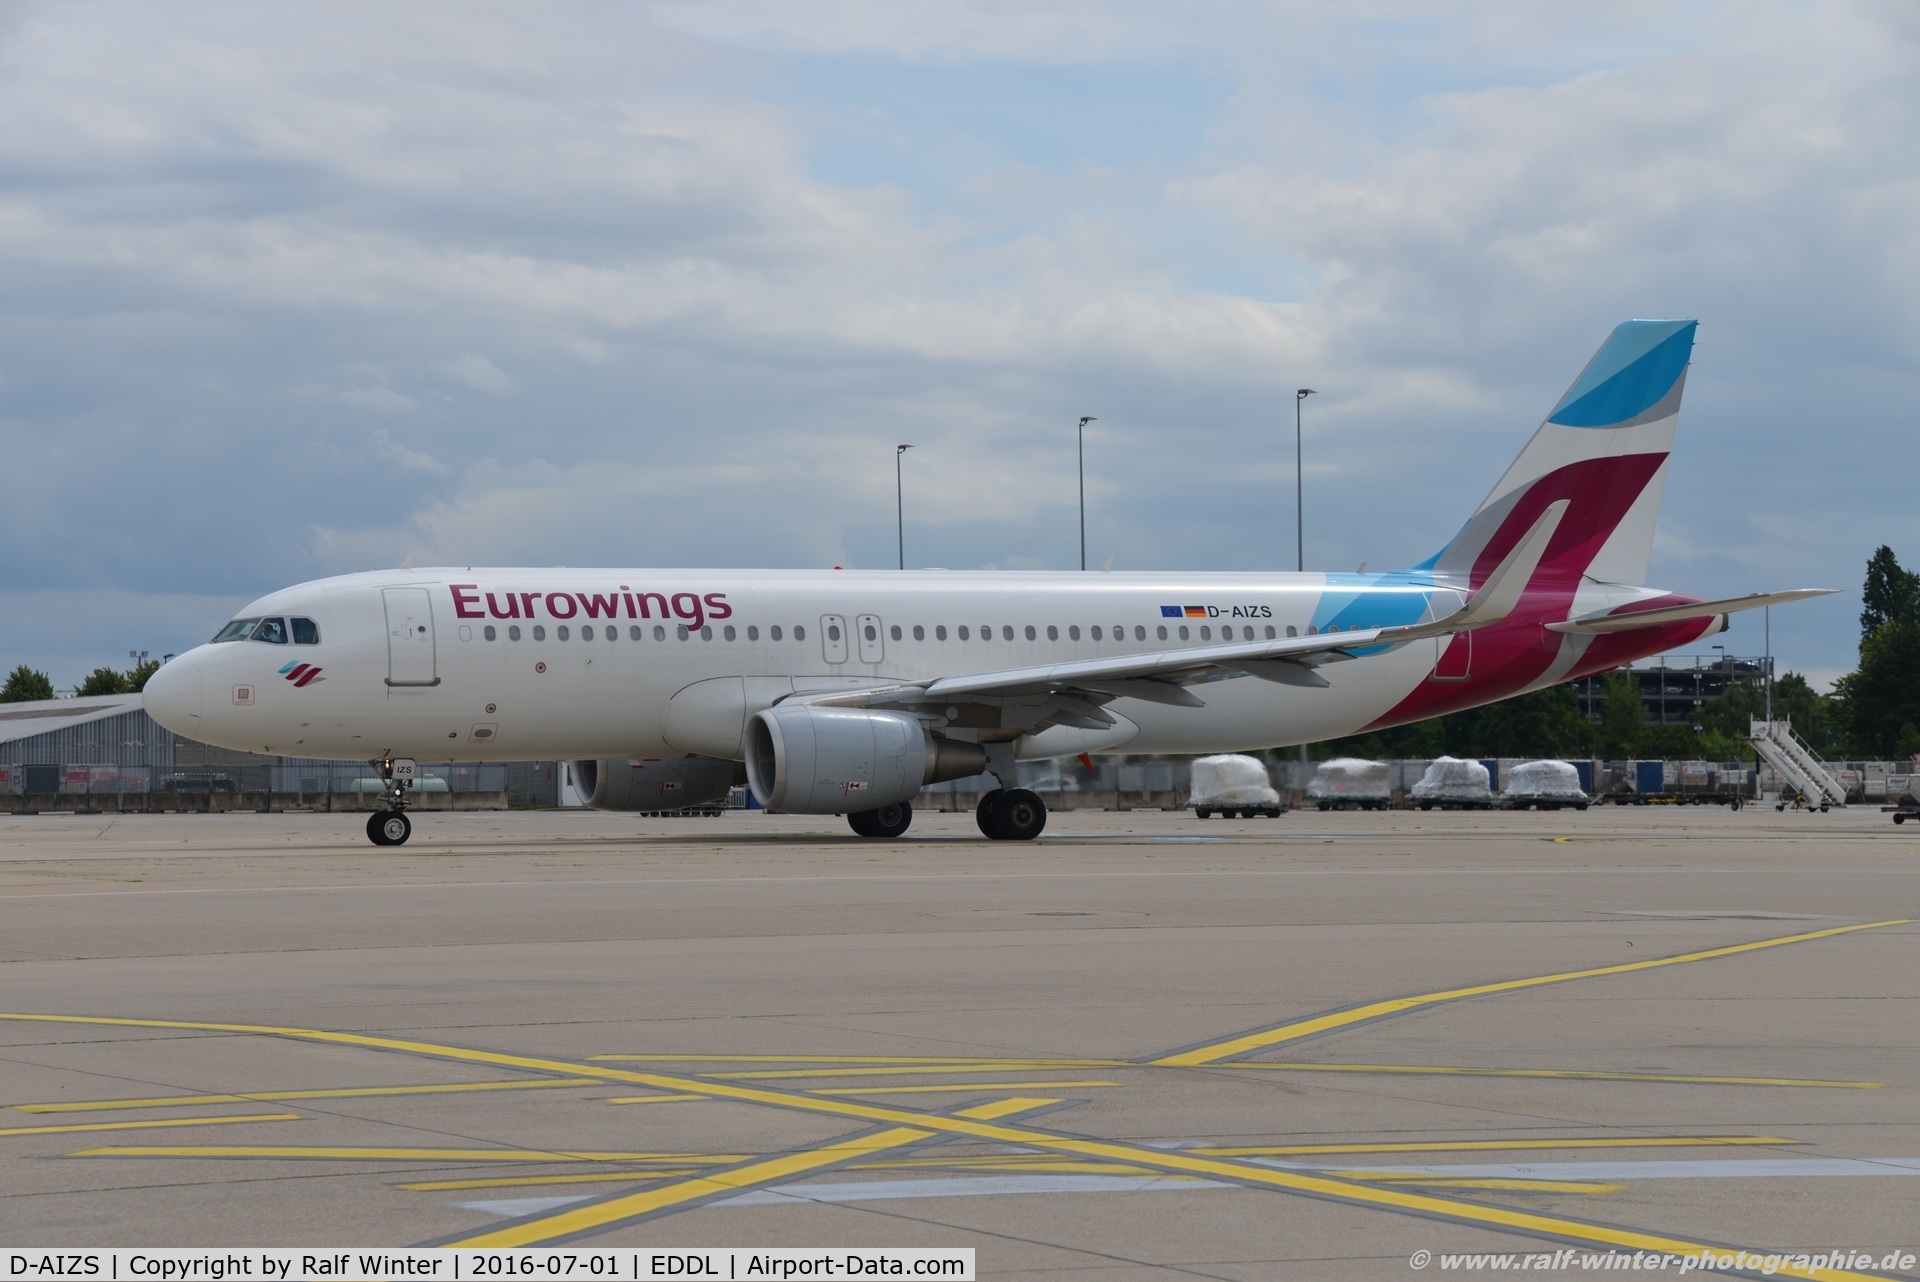 D-AIZS, 2013 Airbus A320-214 C/N 5557, Airbus A320-214(W) - EW EWG Eurowings ex Lufthansa 'Seeheim-Jungenheim' - 5557 - D-AIZS - 01.07.2016 - DUS